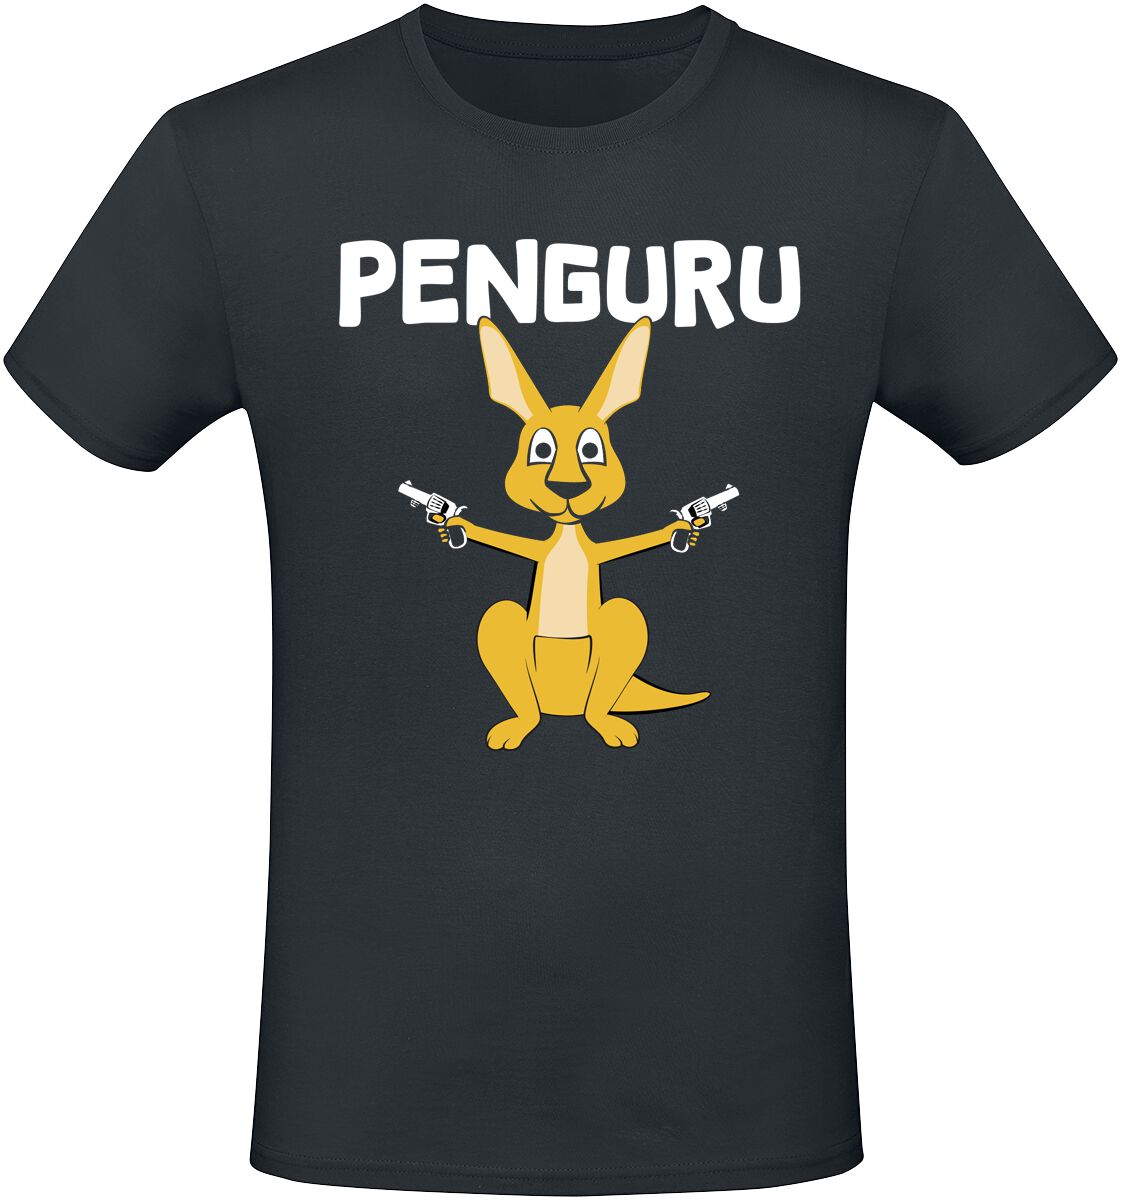 Tierisch T-Shirt - Penguru - M bis 3XL - für Männer - Größe XXL - schwarz